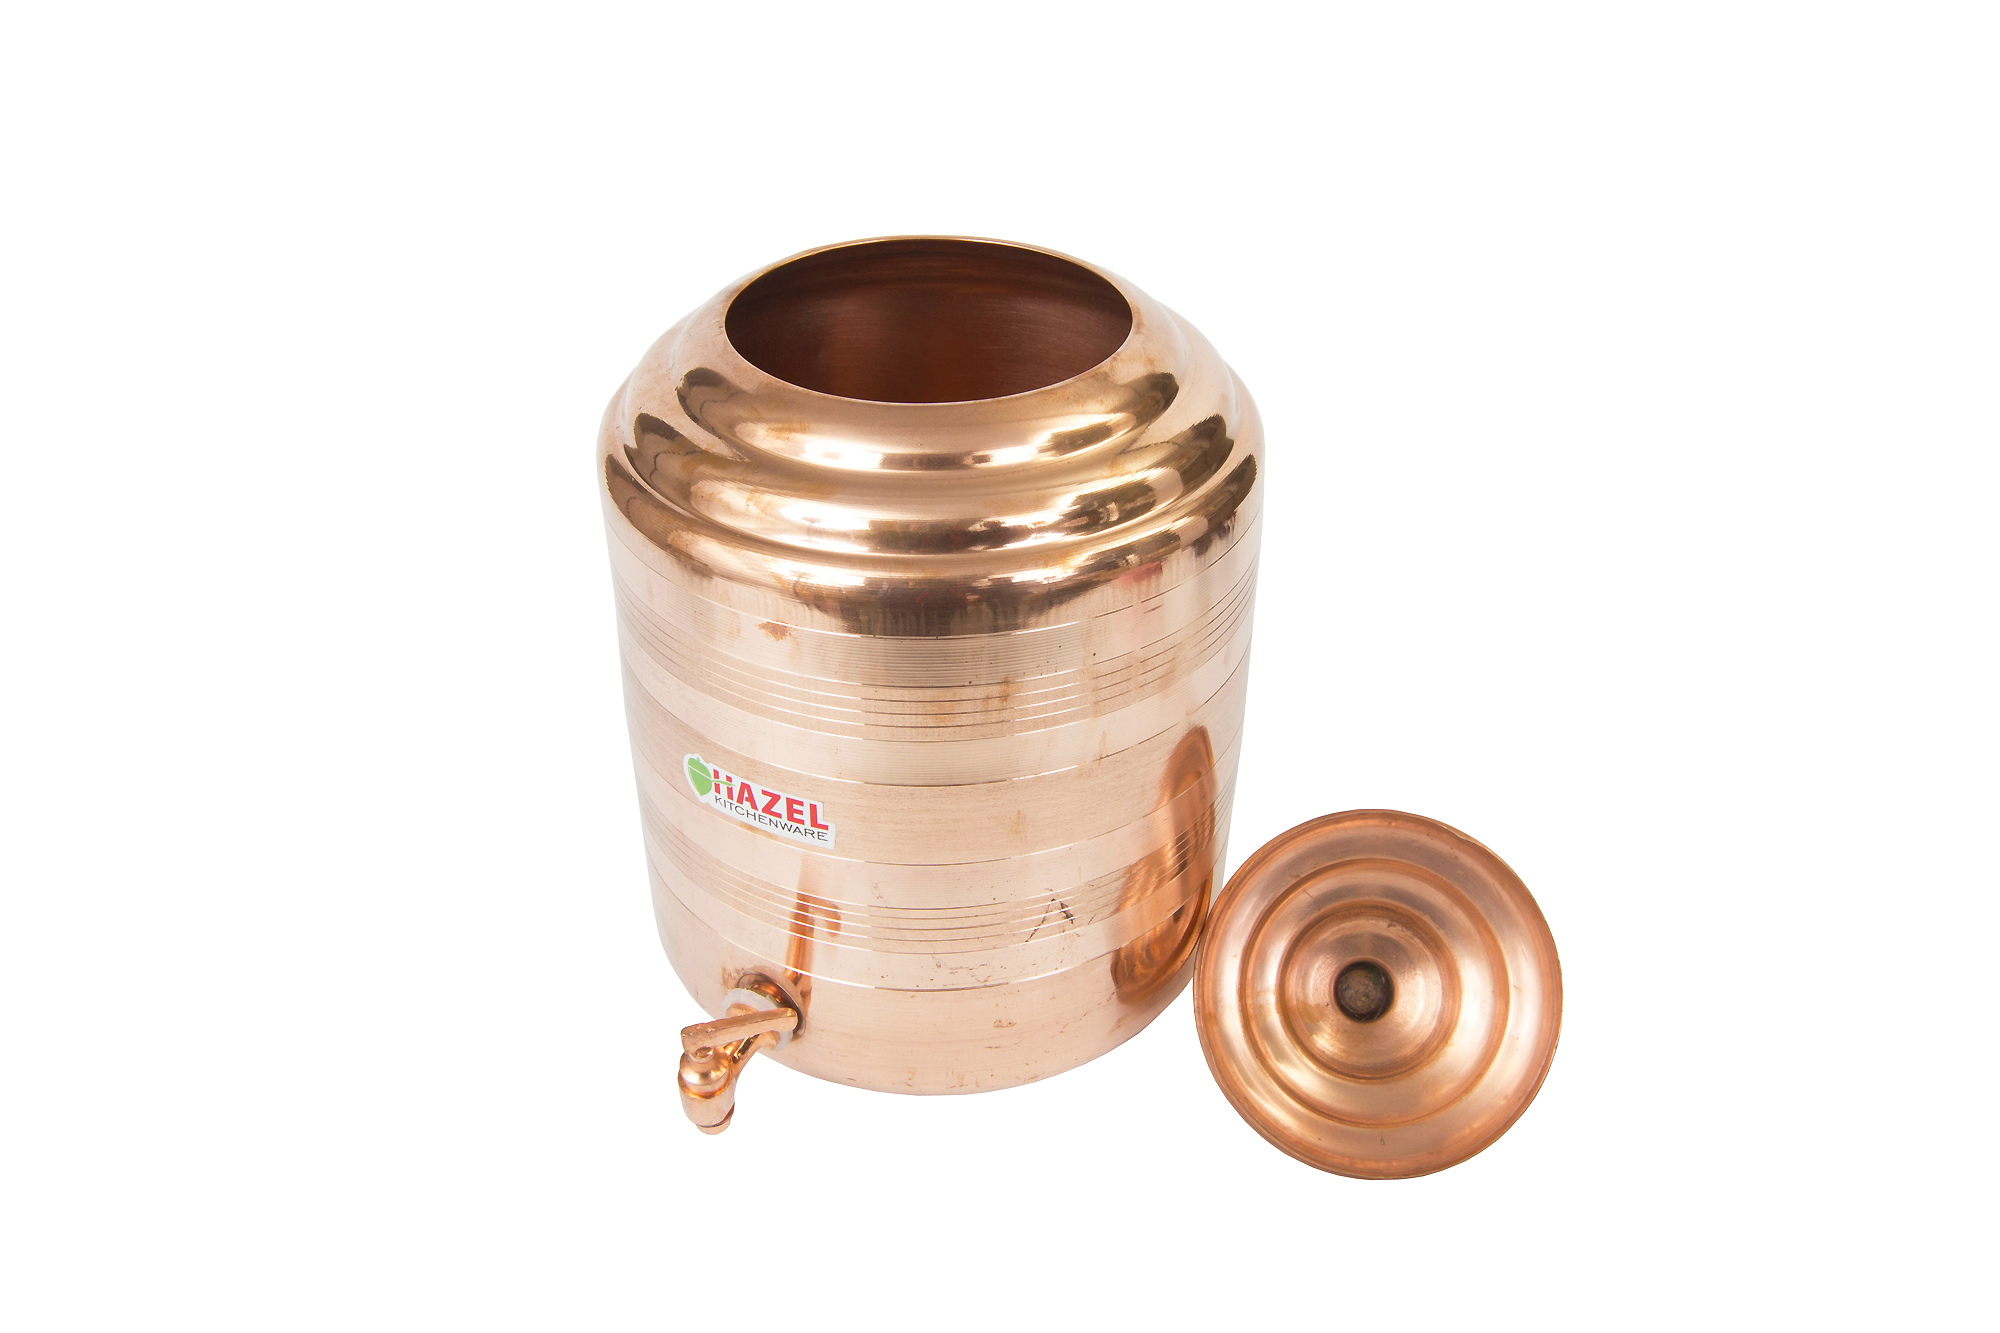 HAZEL Copper Water Tank Matka Leak Proof 7.5 ltr